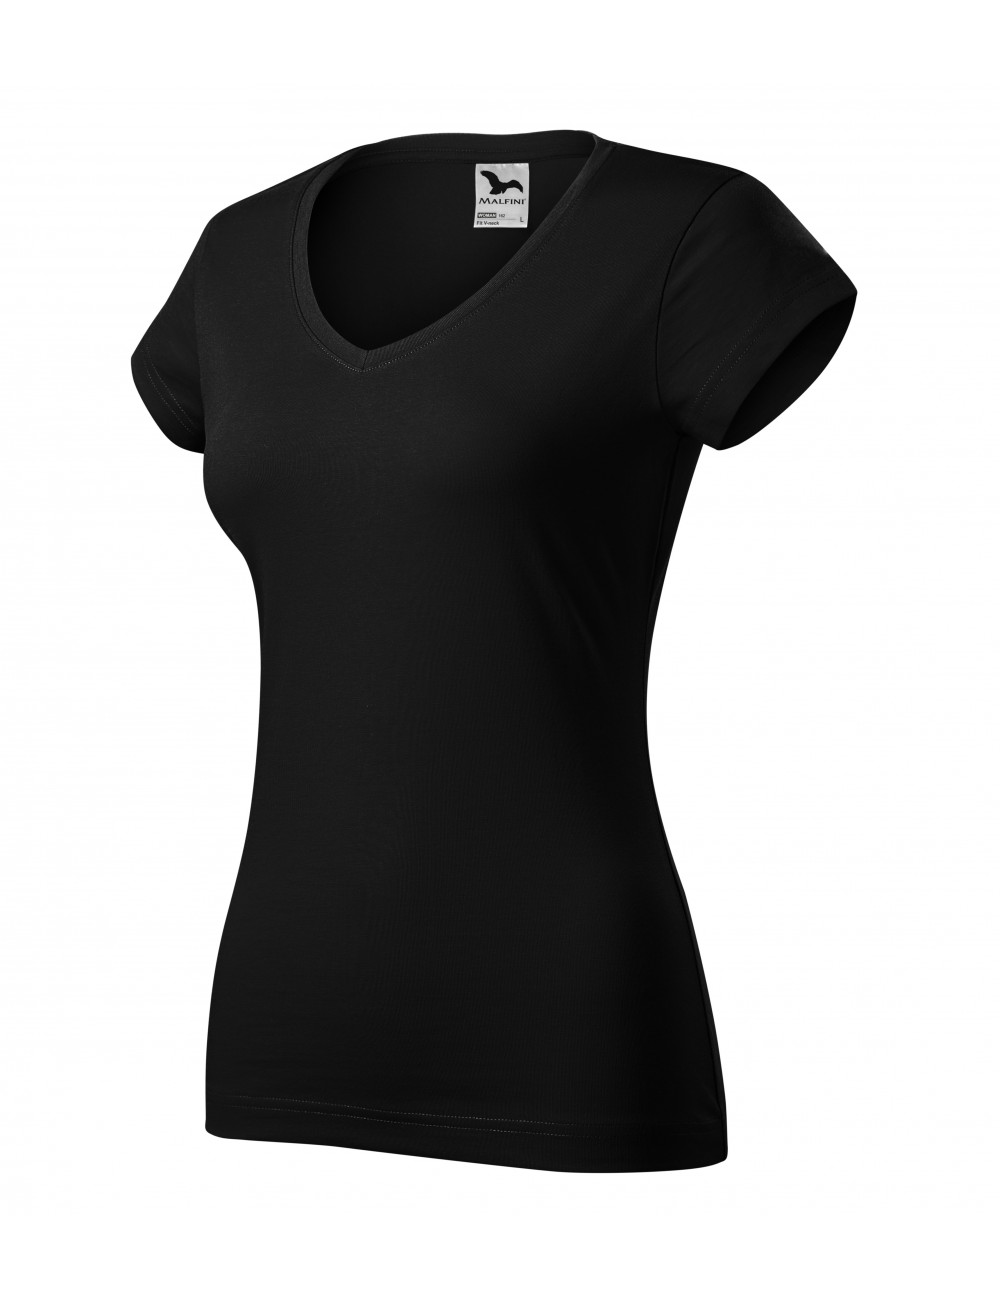 Damen-T-Shirt mit V-Ausschnitt 162 schwarz Adler Malfini